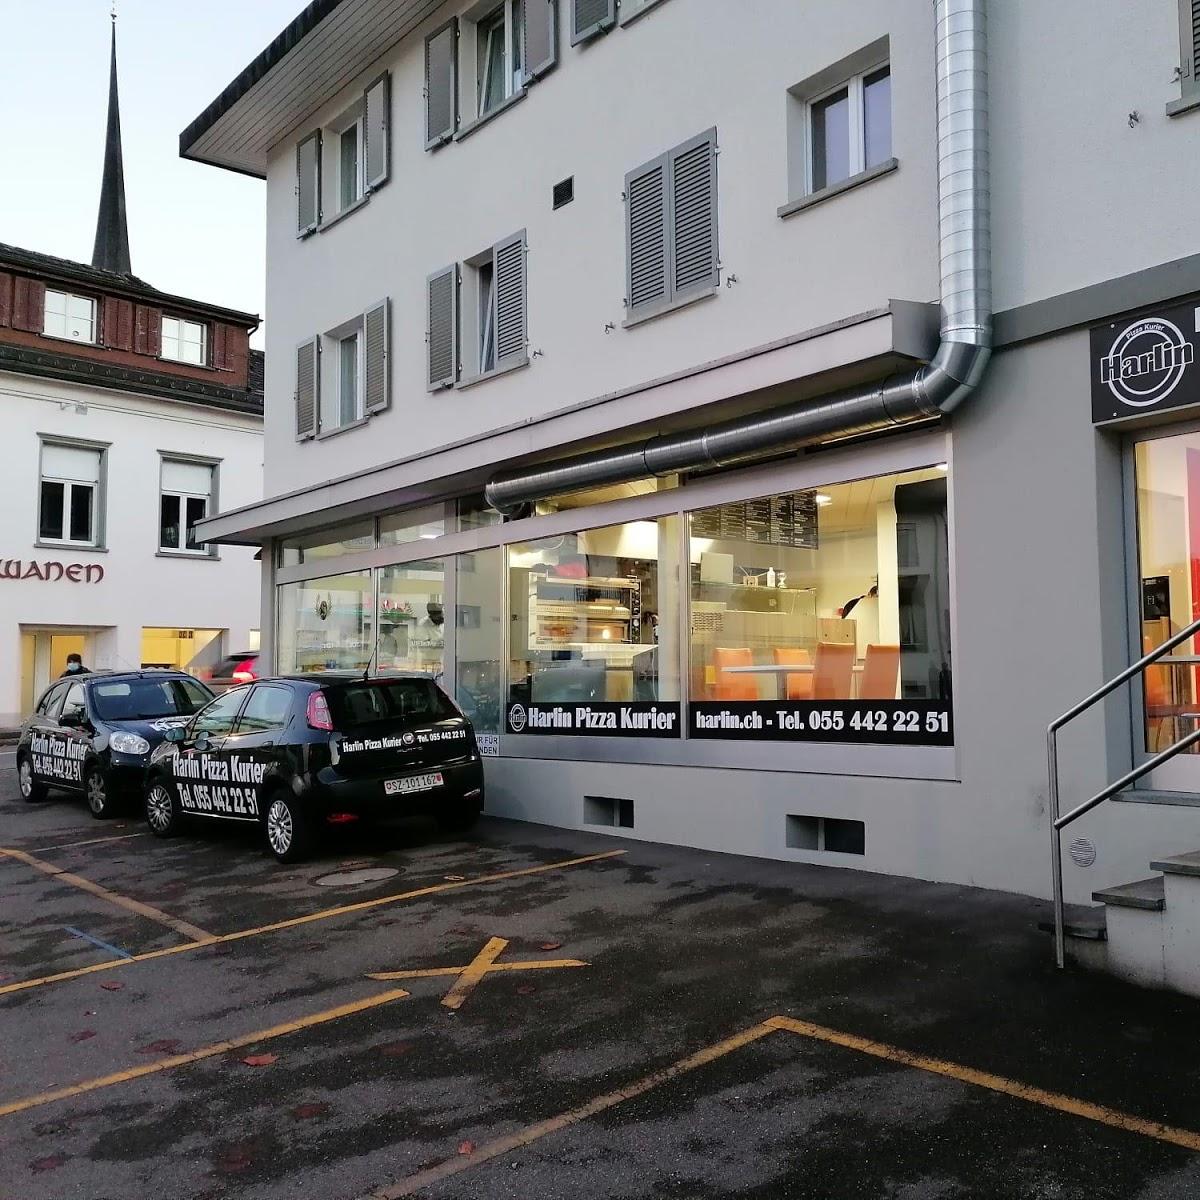 Restaurant "Harlin Pizzakurier" in Altendorf